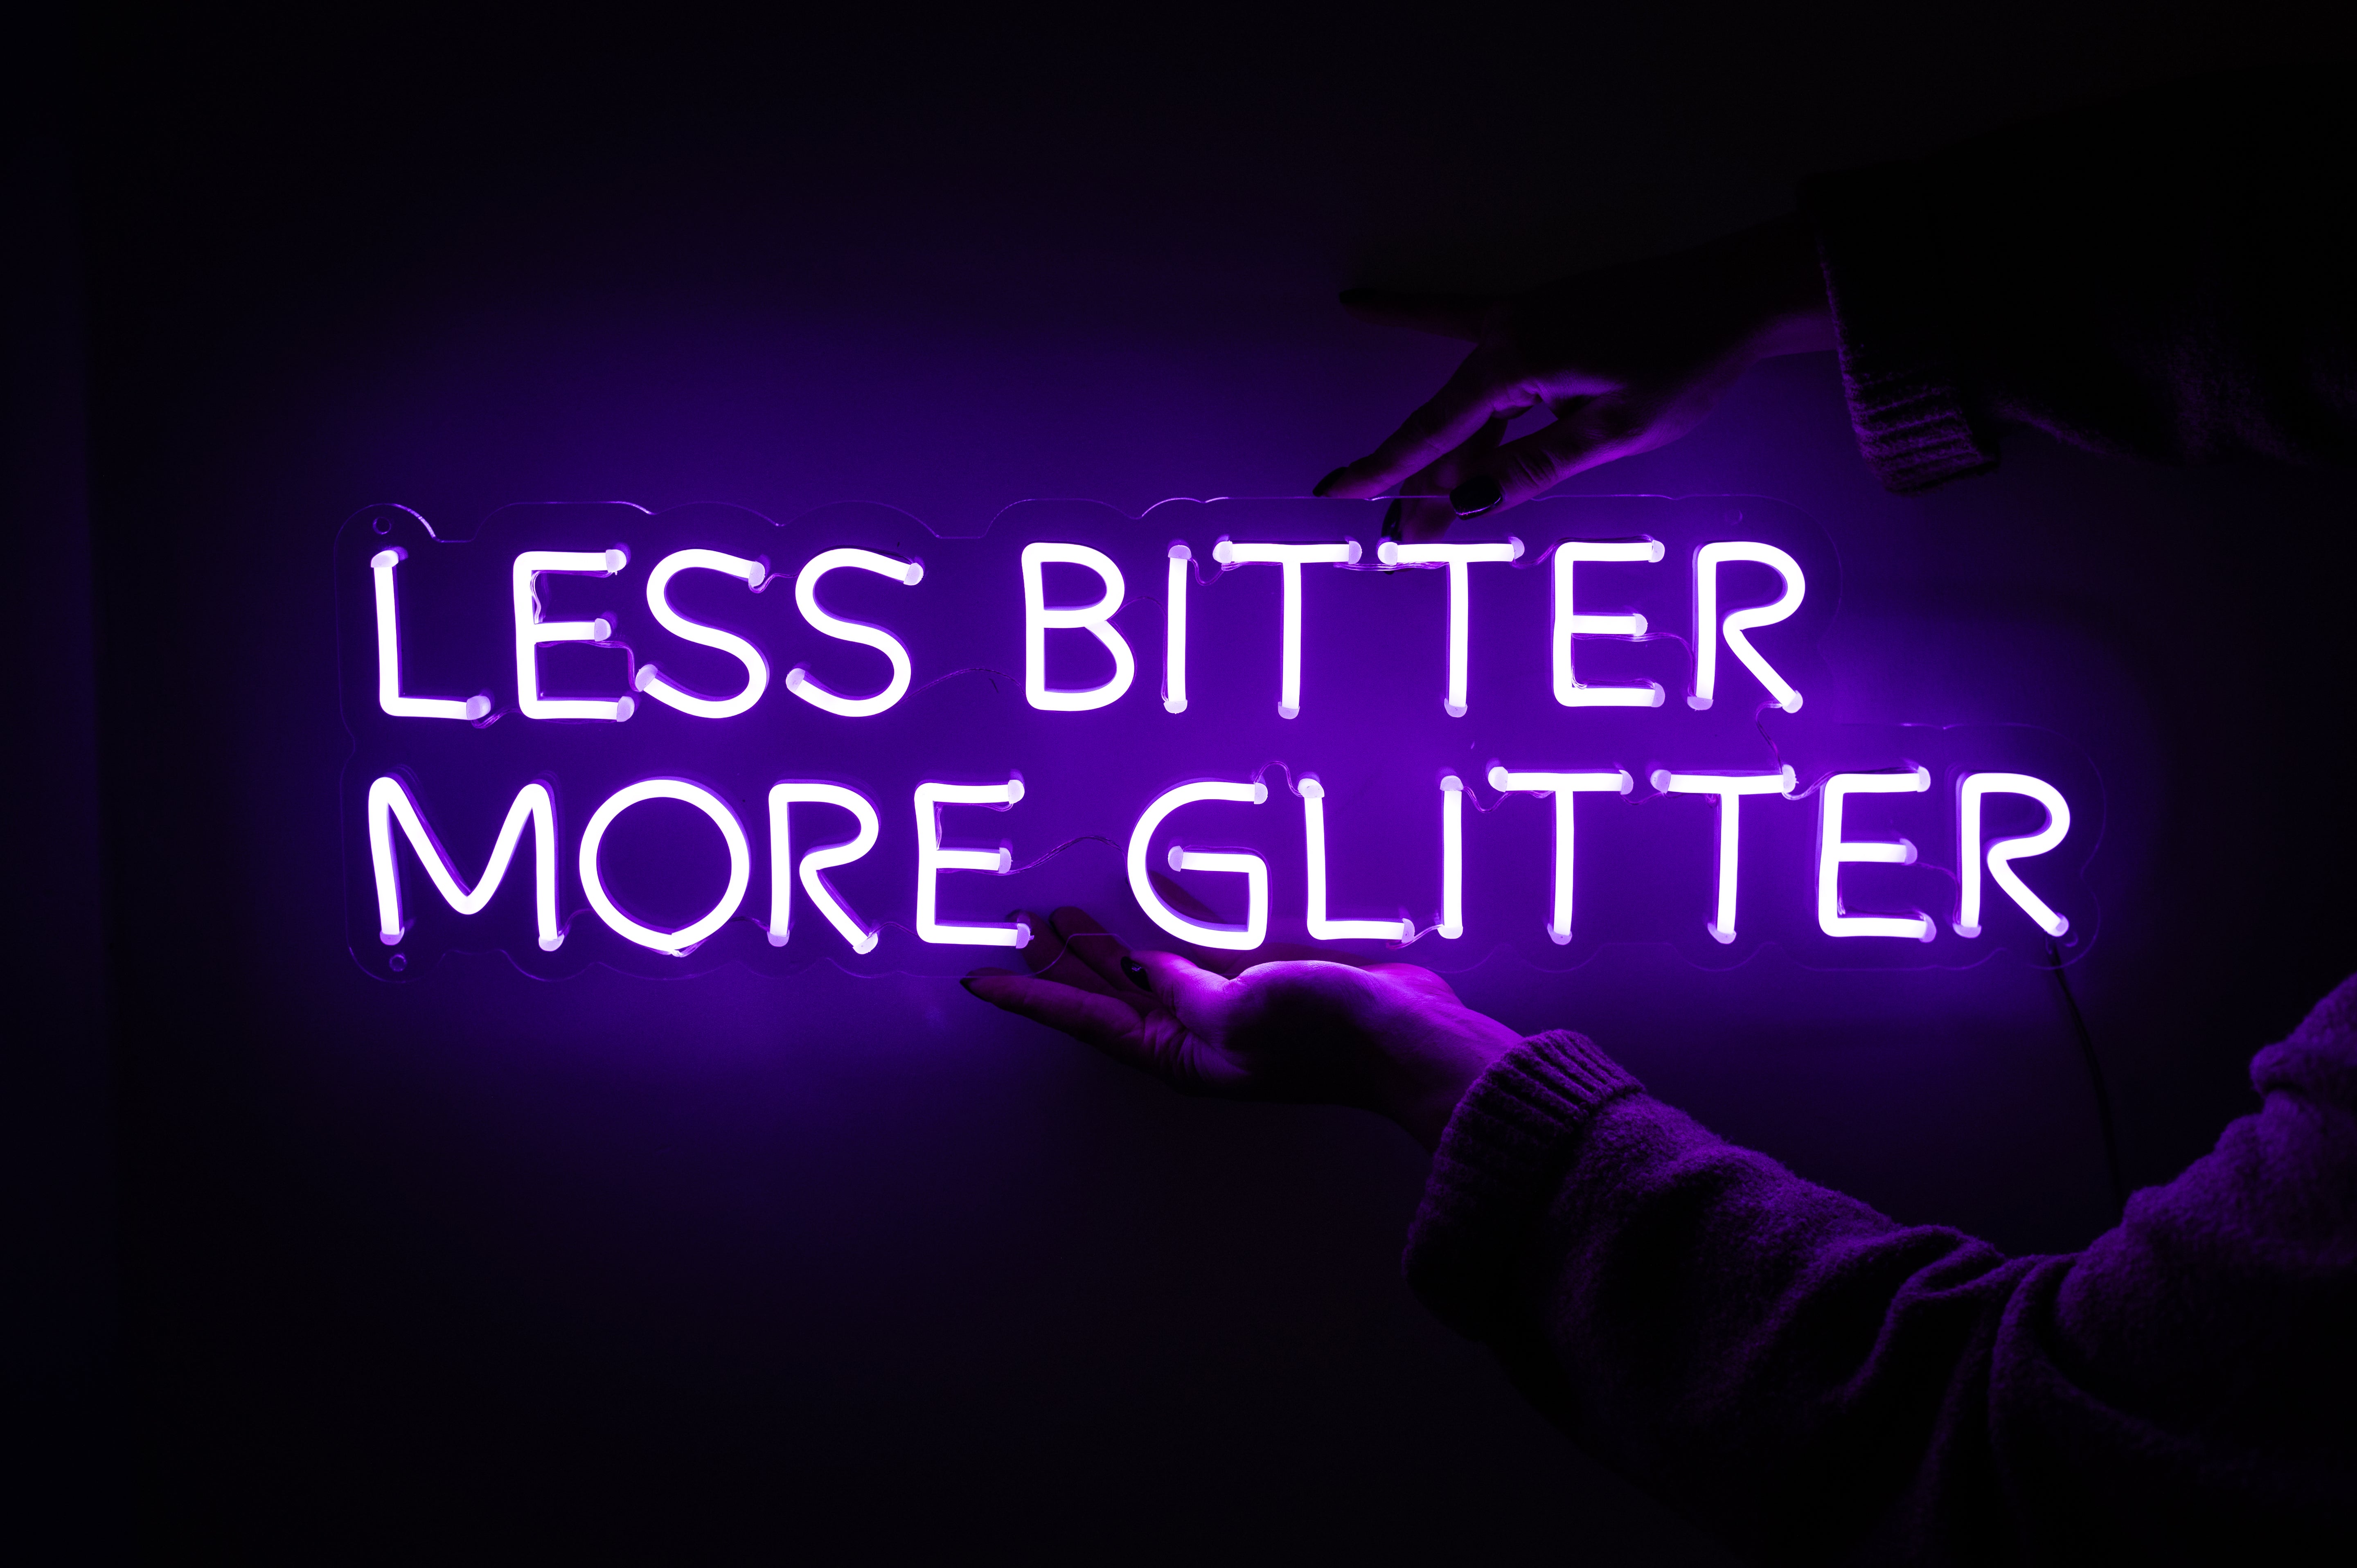 Less bitter more glitter